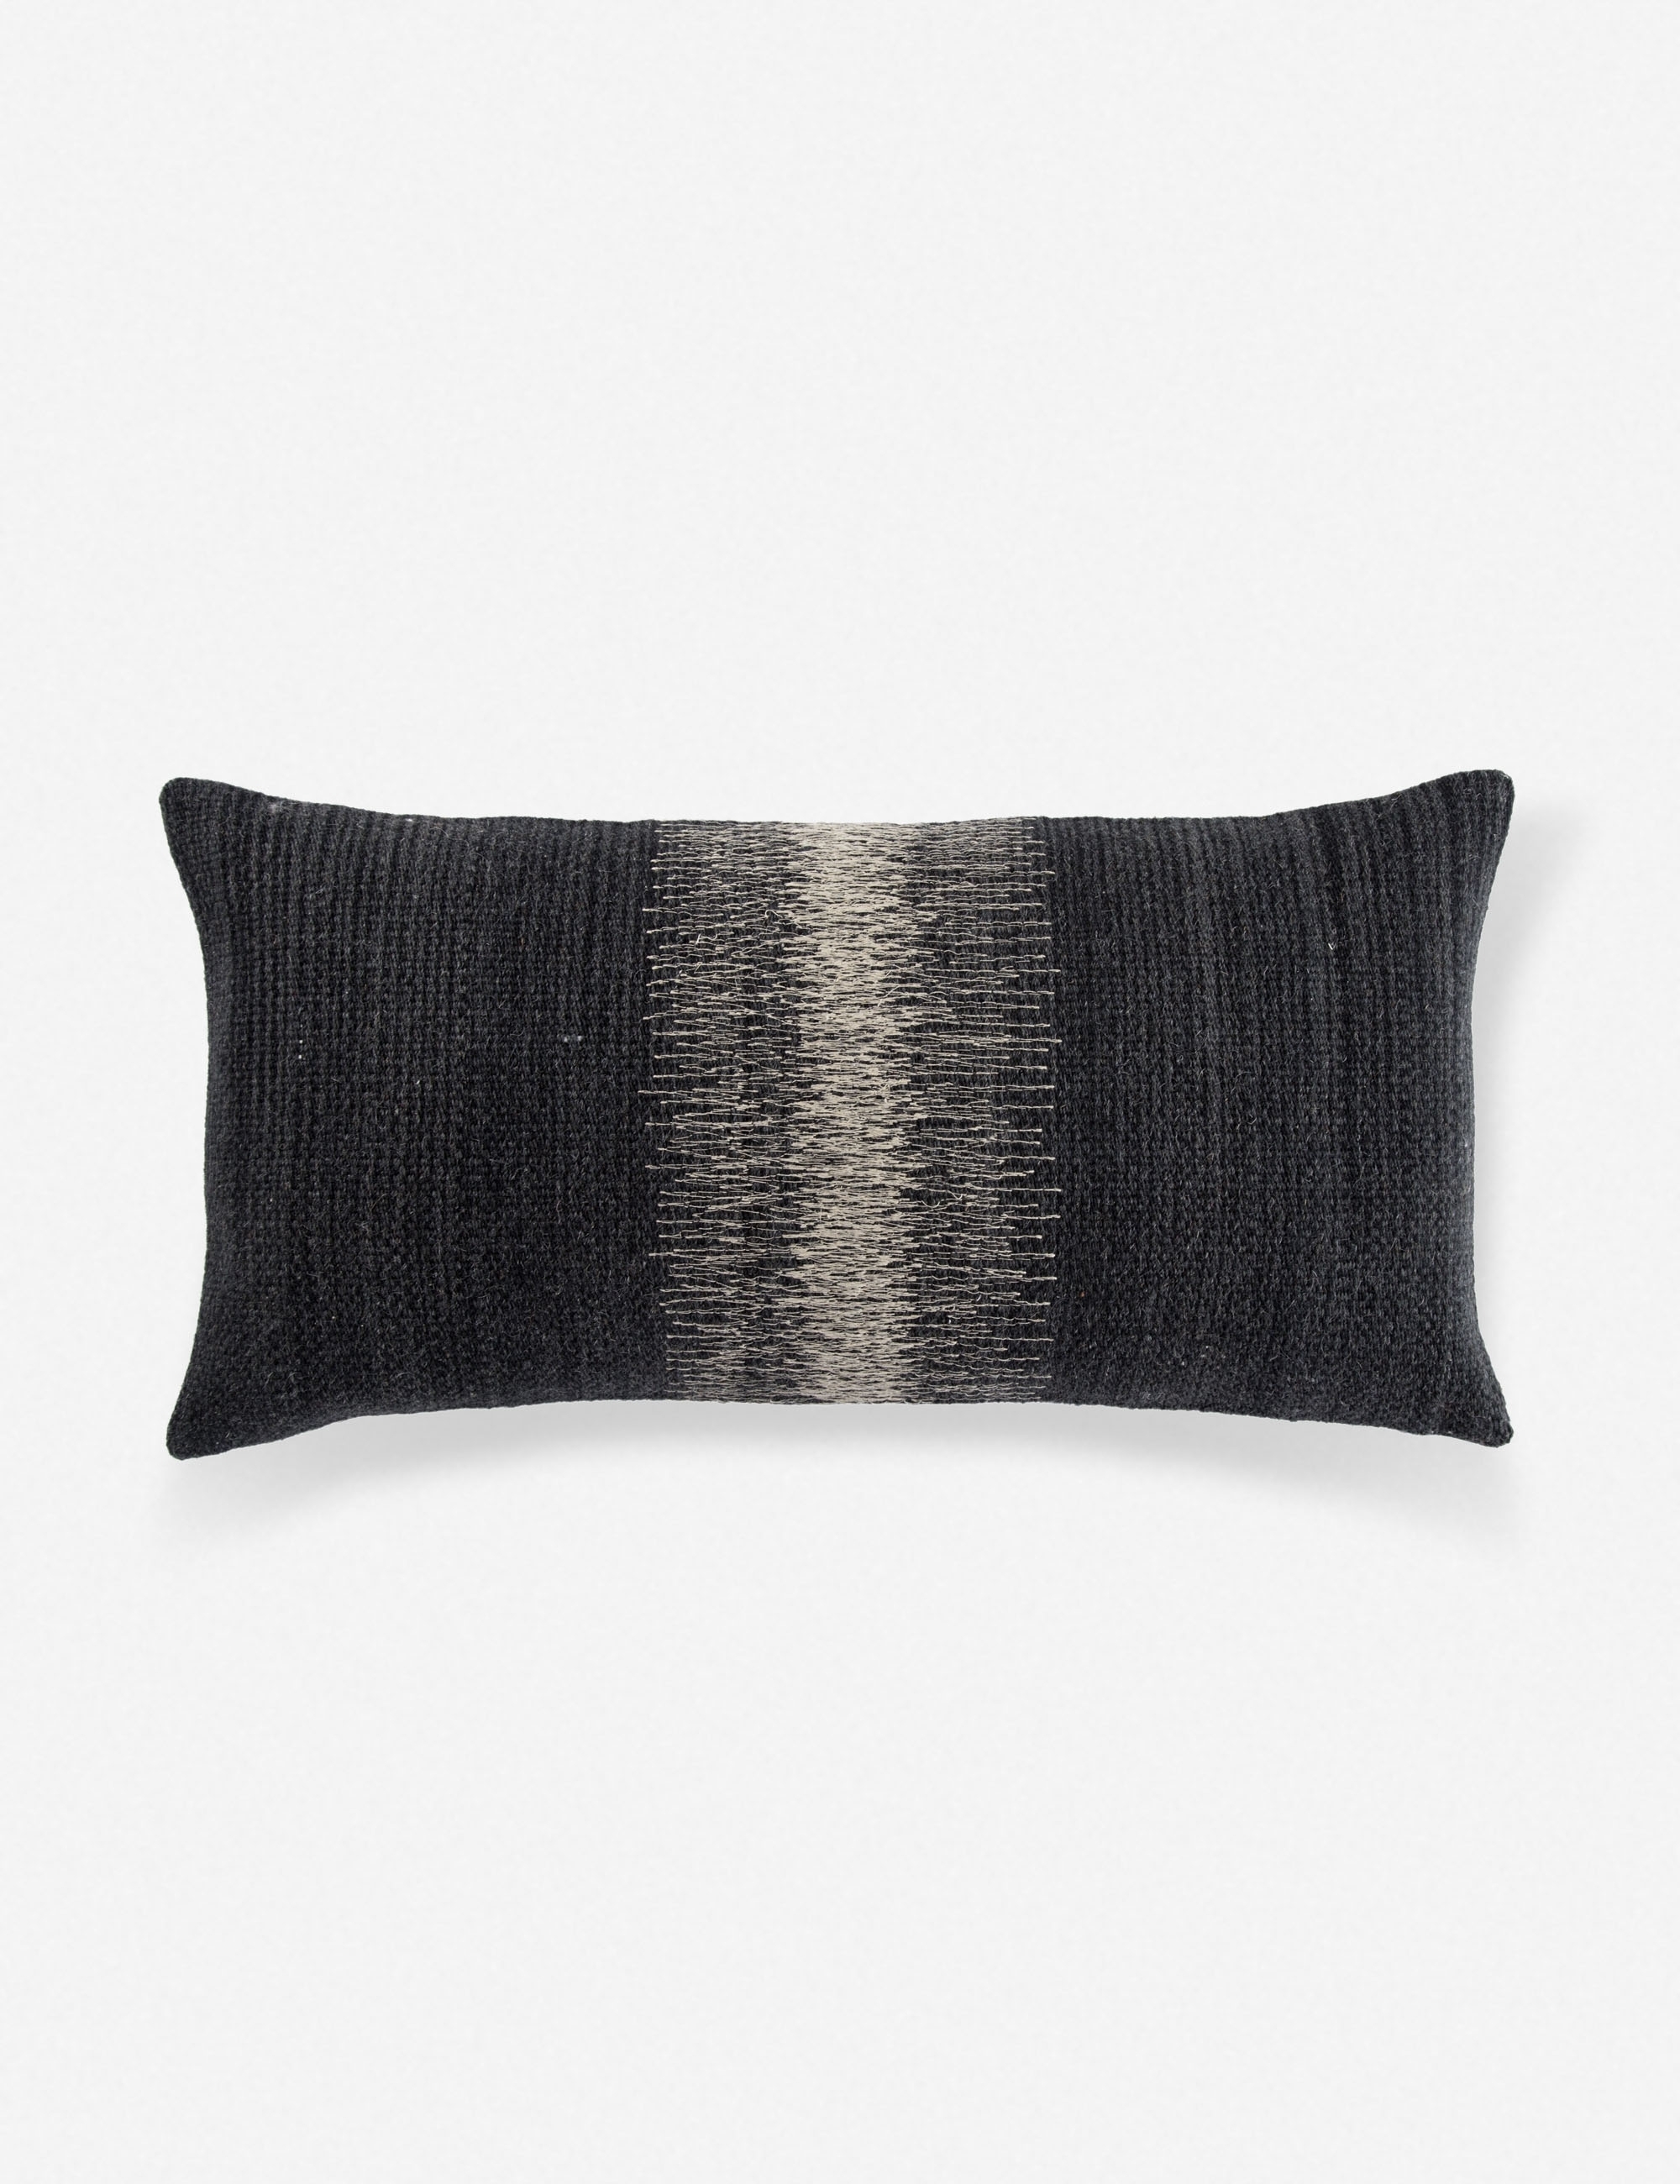 Ulsa Lumbar Pillow, Black and Gray - Image 0